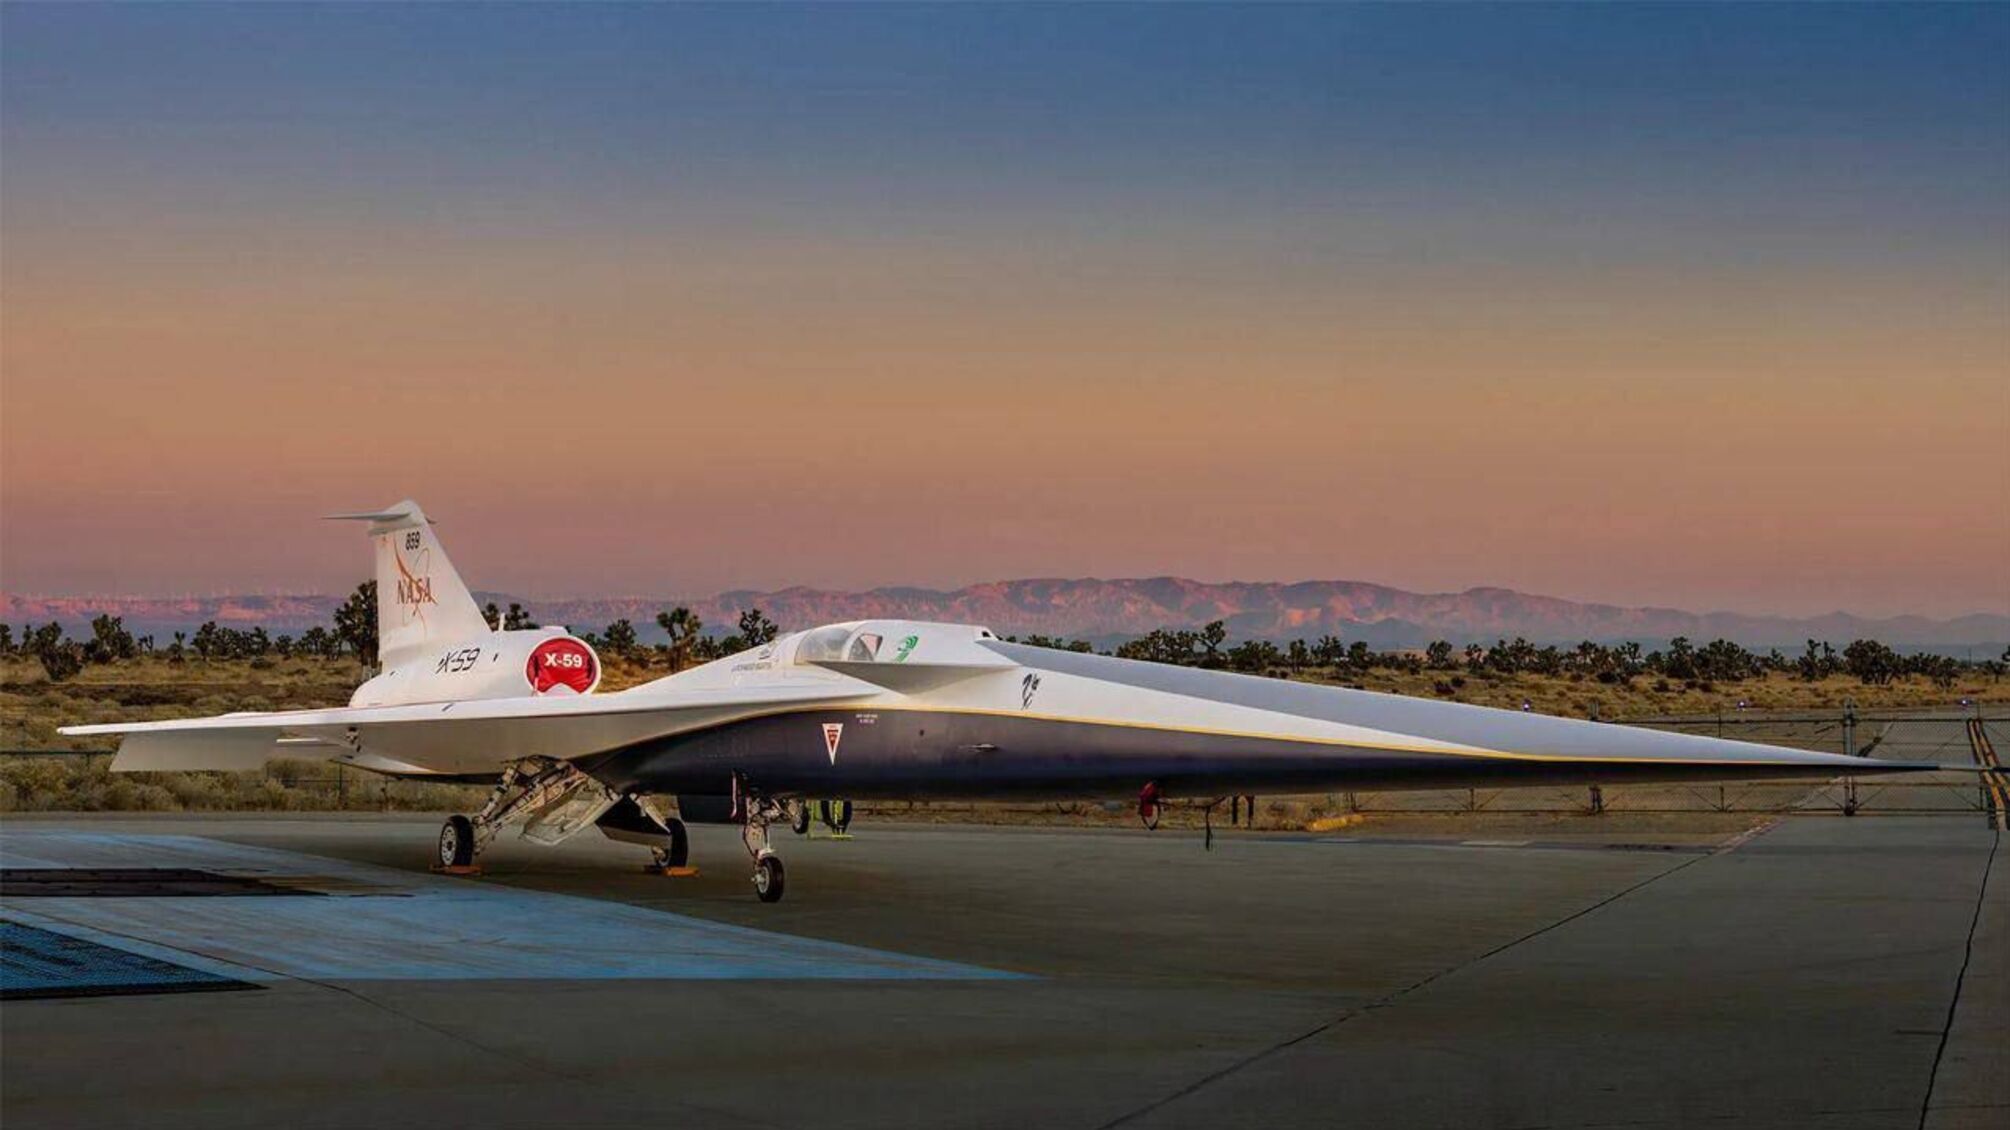 Историческая презентация: в NASA разработали X-59 Quesst – самолет будущего